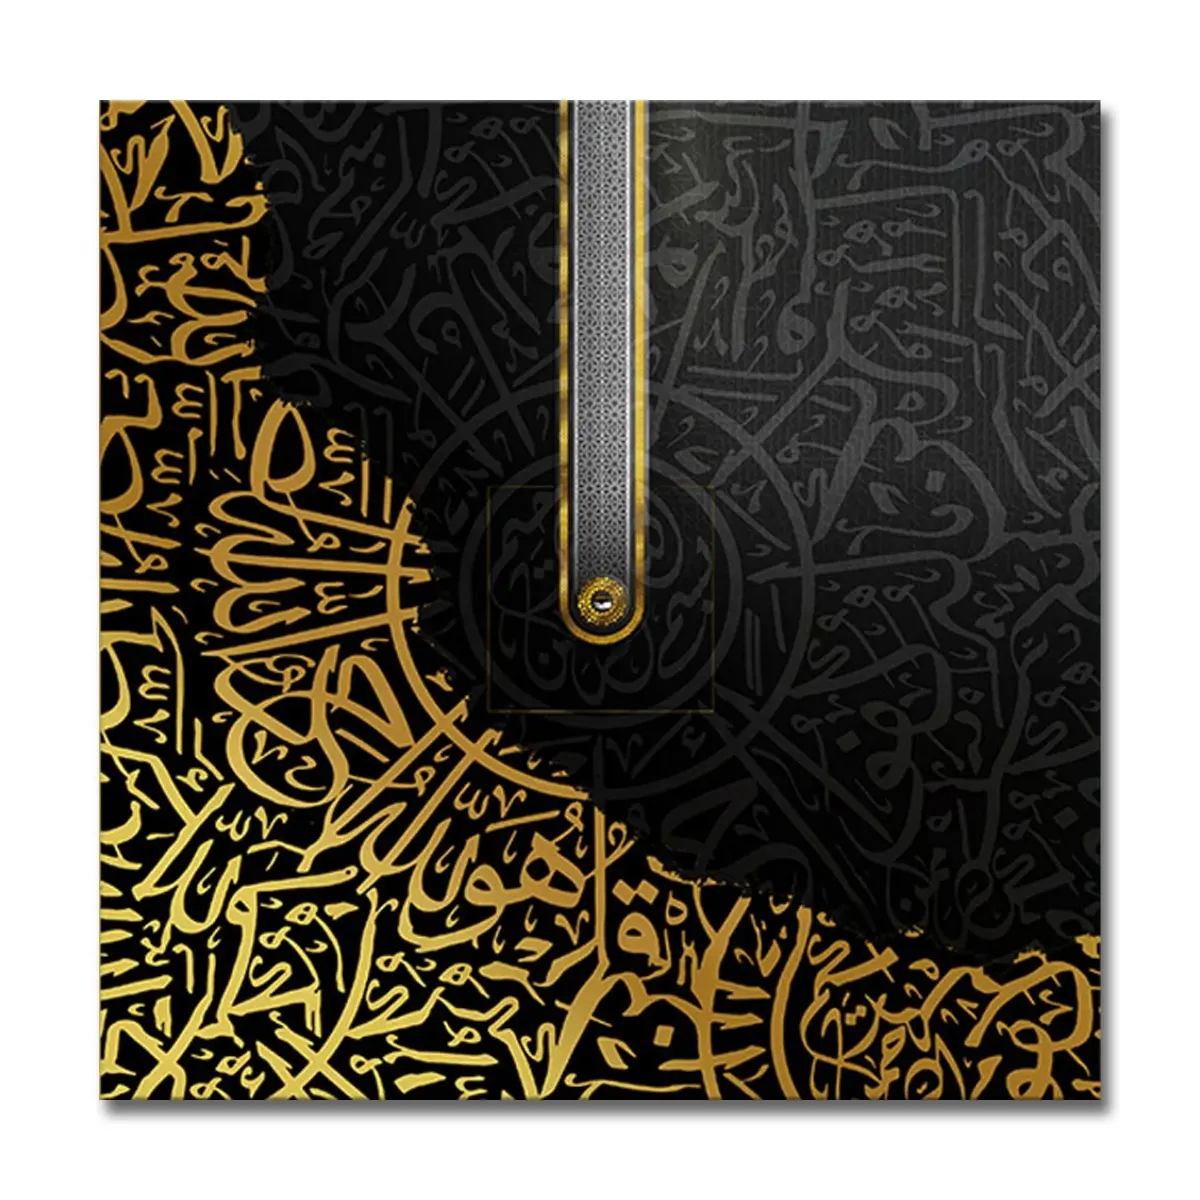 Calligraphie arabe cristal porcelaine peinture cristal porcelaine impression photo décor moderne cadre islamique cadre arabe